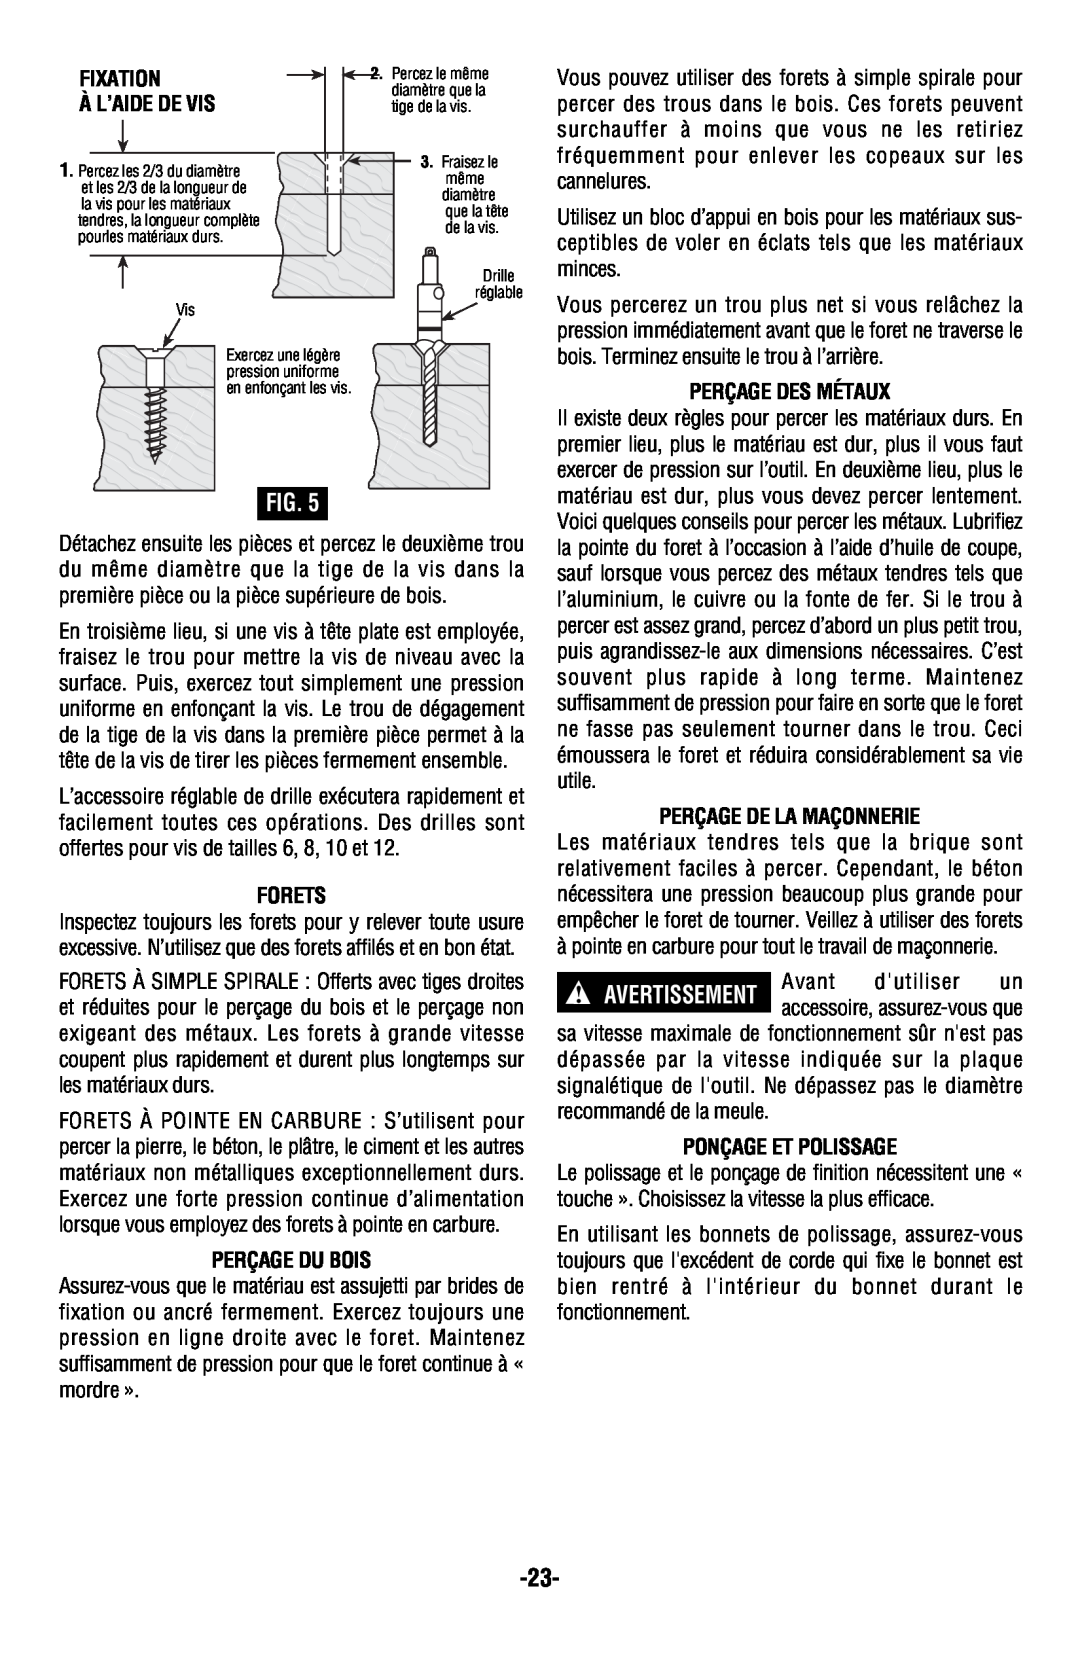 Bosch Power Tools 13624 Fixation À L’Aide De Vis, Forets, Perçage Du Bois, Perçage Des Métaux, Perçage De La Maçonnerie 